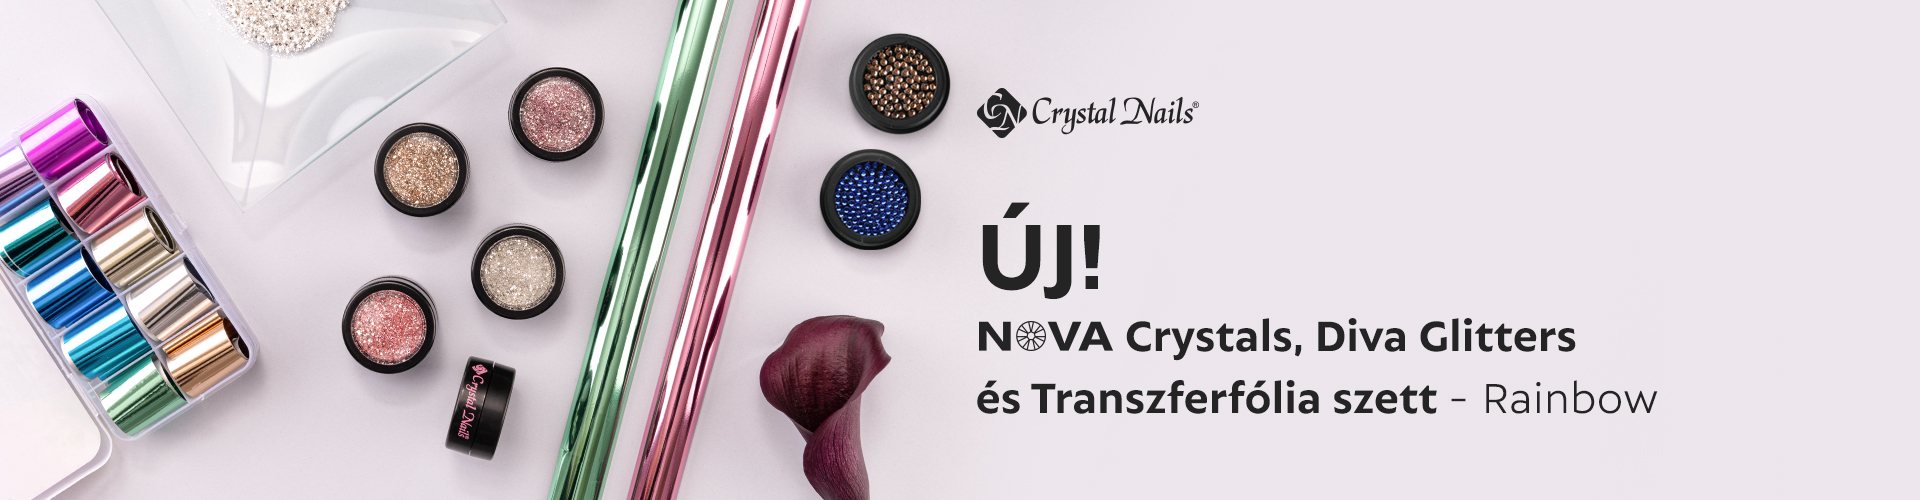 Crystal Nails Pécs Kereskedők Háza Tanfolyamok